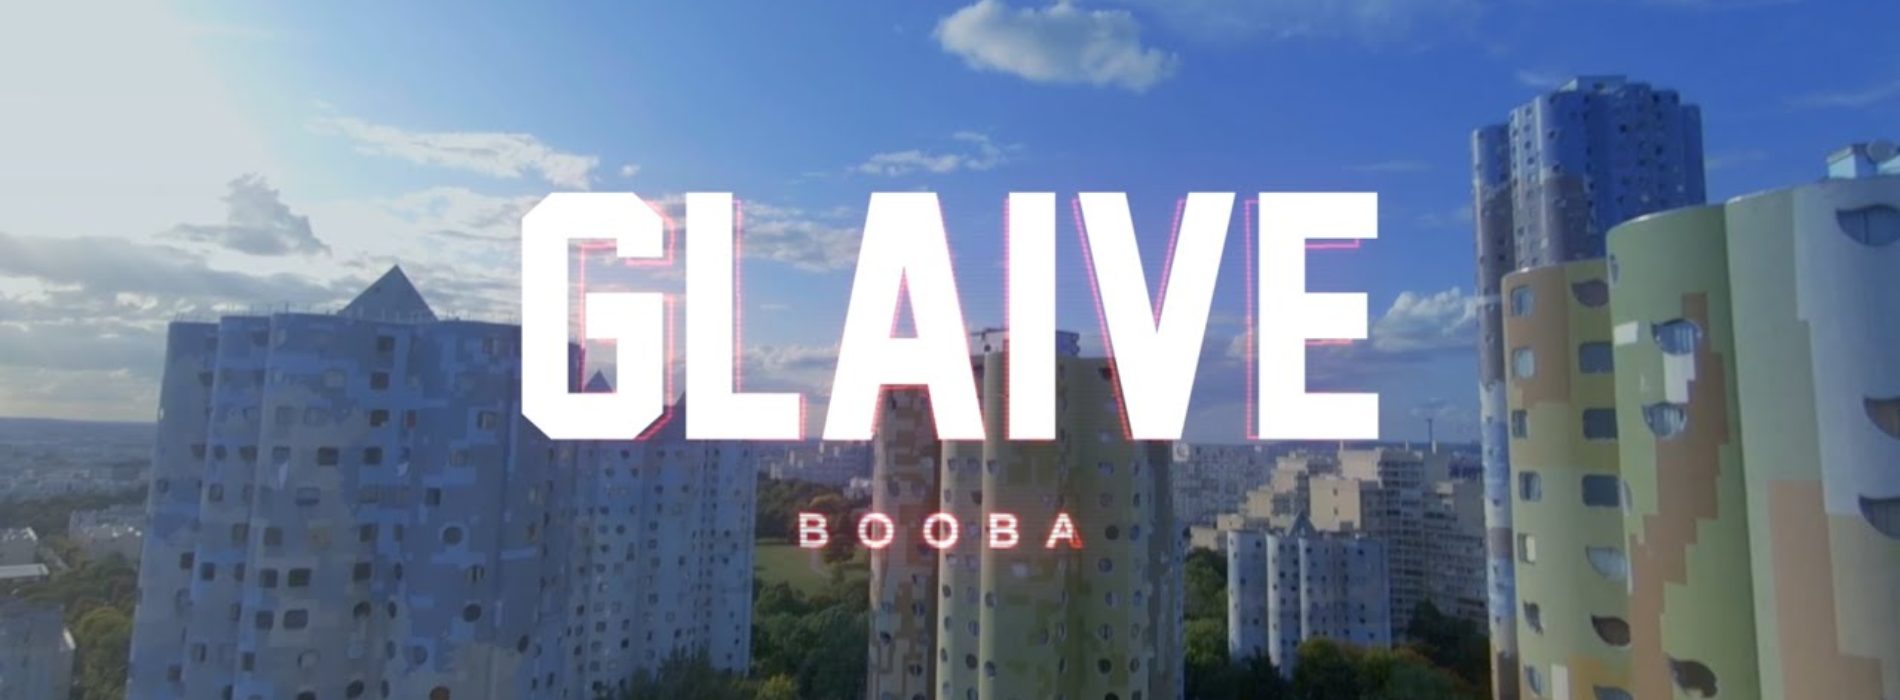 Booba – GLAIVE (Clip Officiel) – Septembre 2019